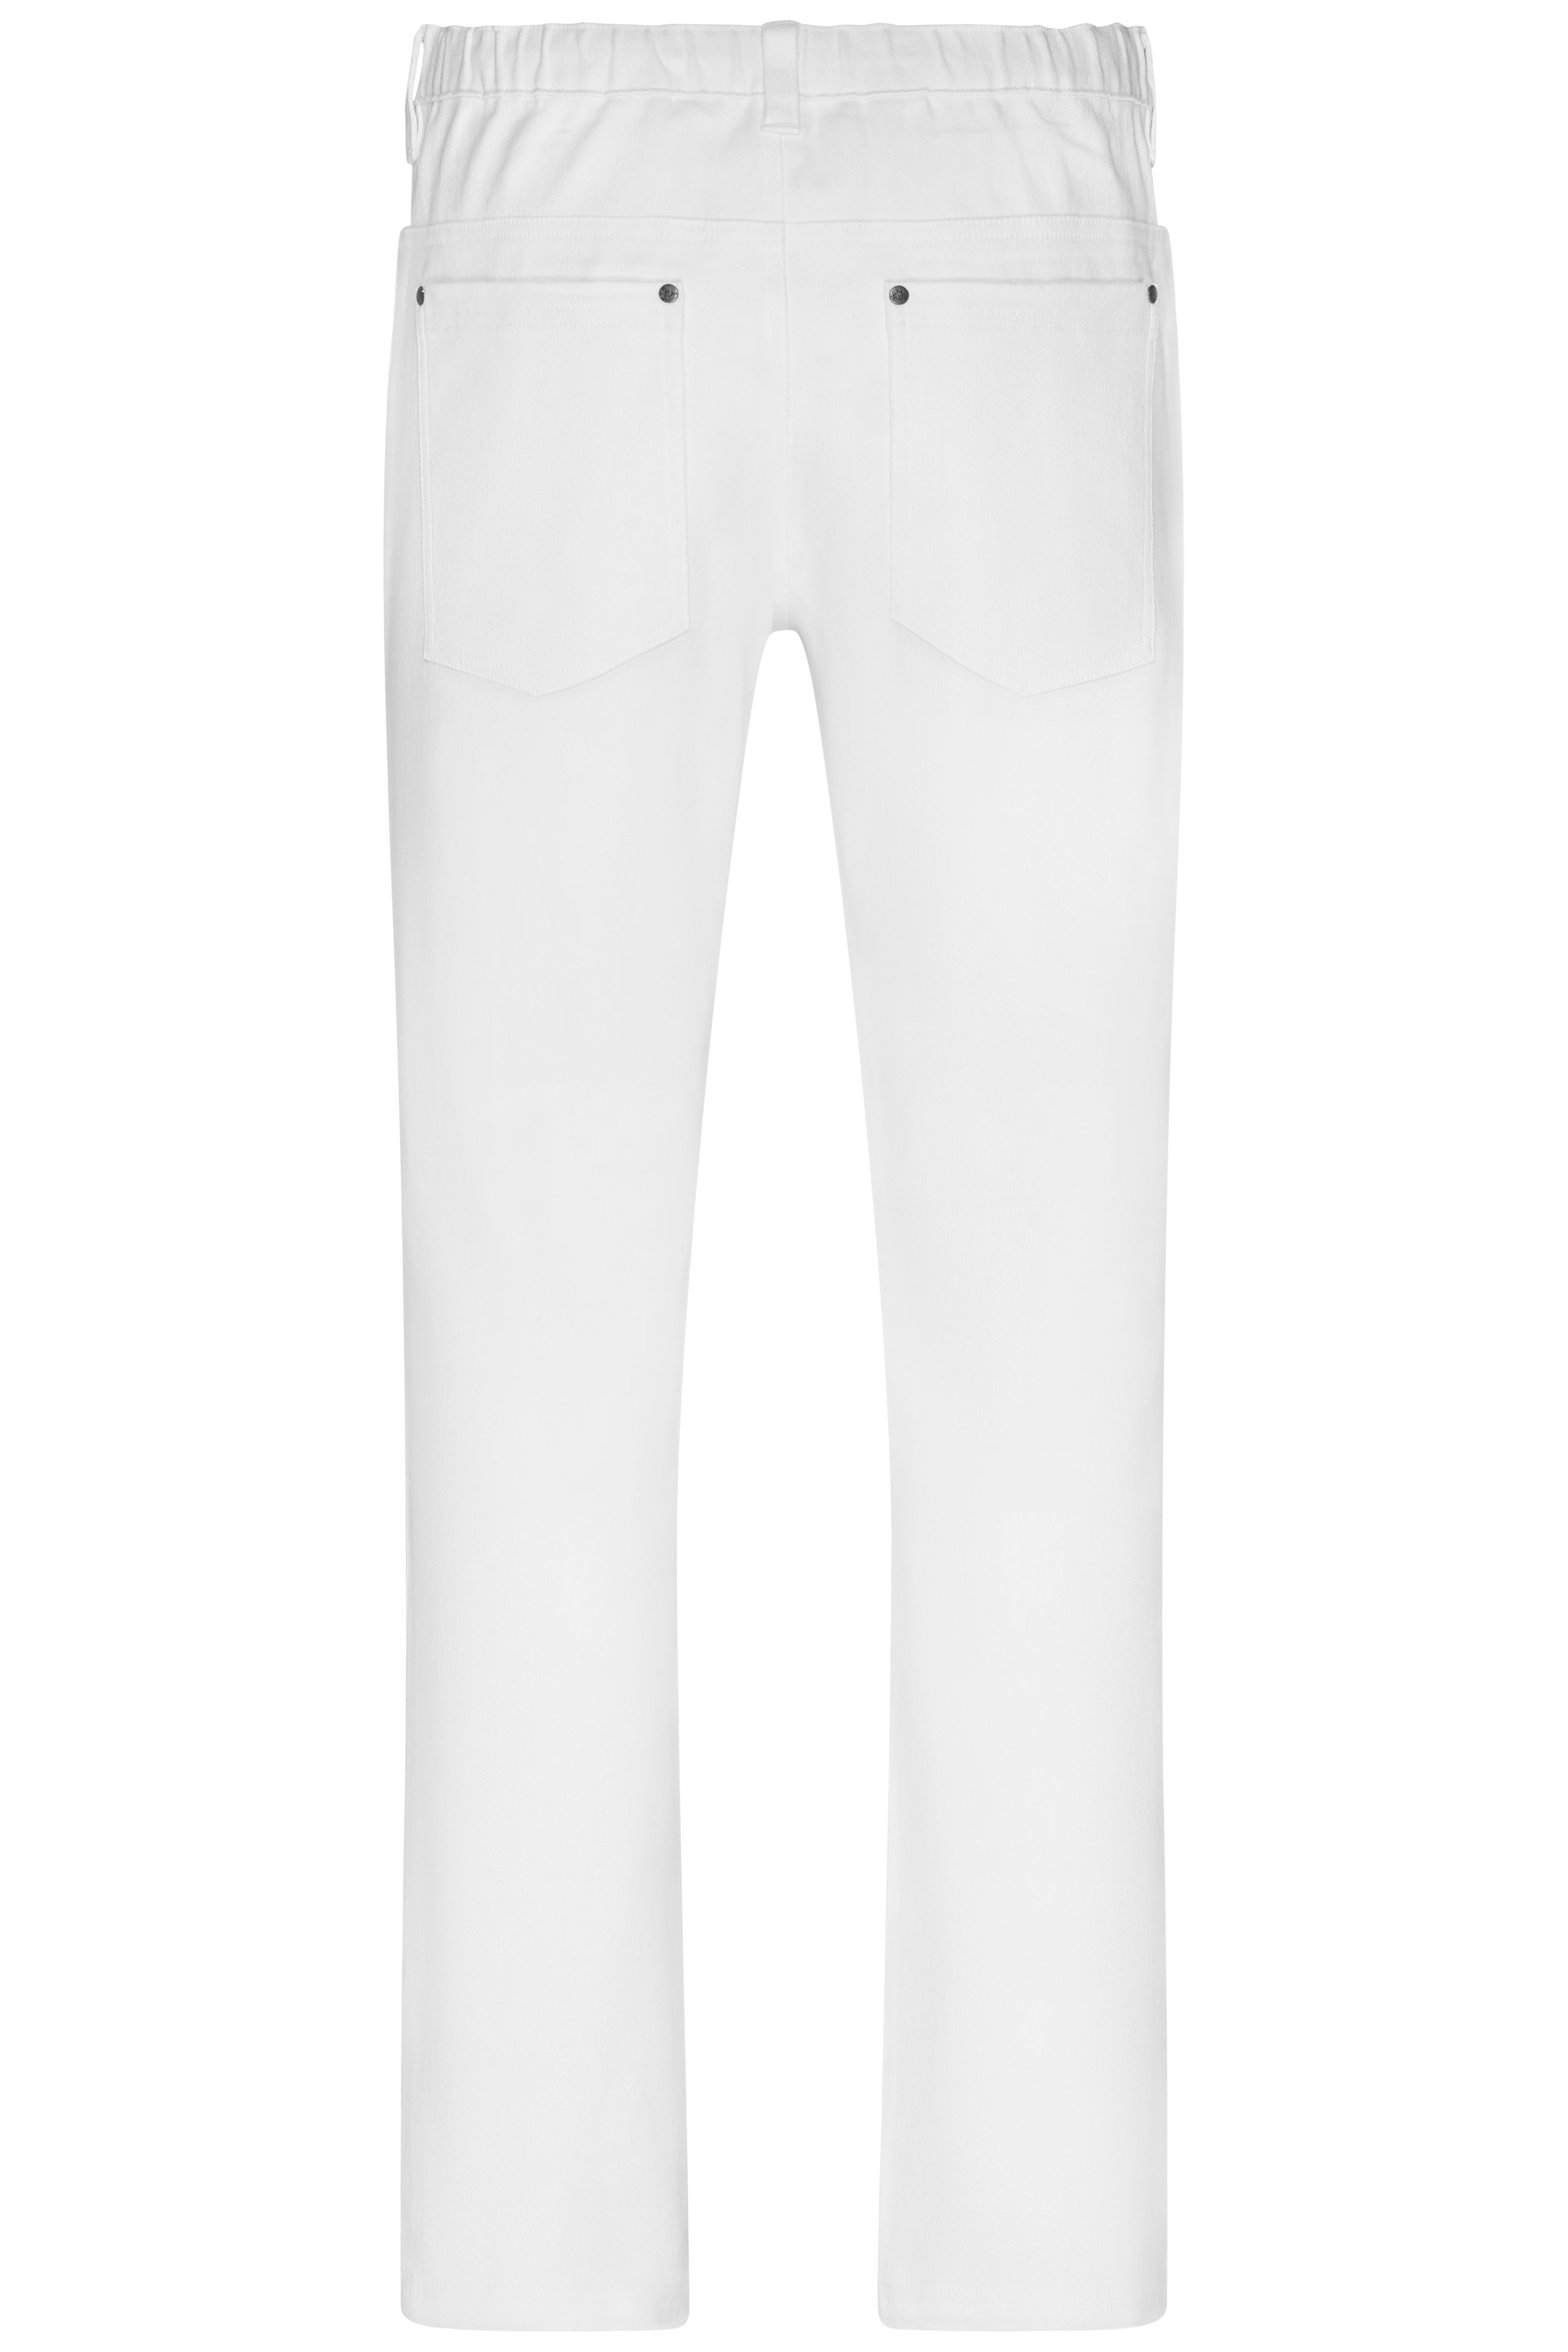 Men's 5-Pocket-Stretch-Pants JN3002 Hose im klassischen 5-Pocket Stil